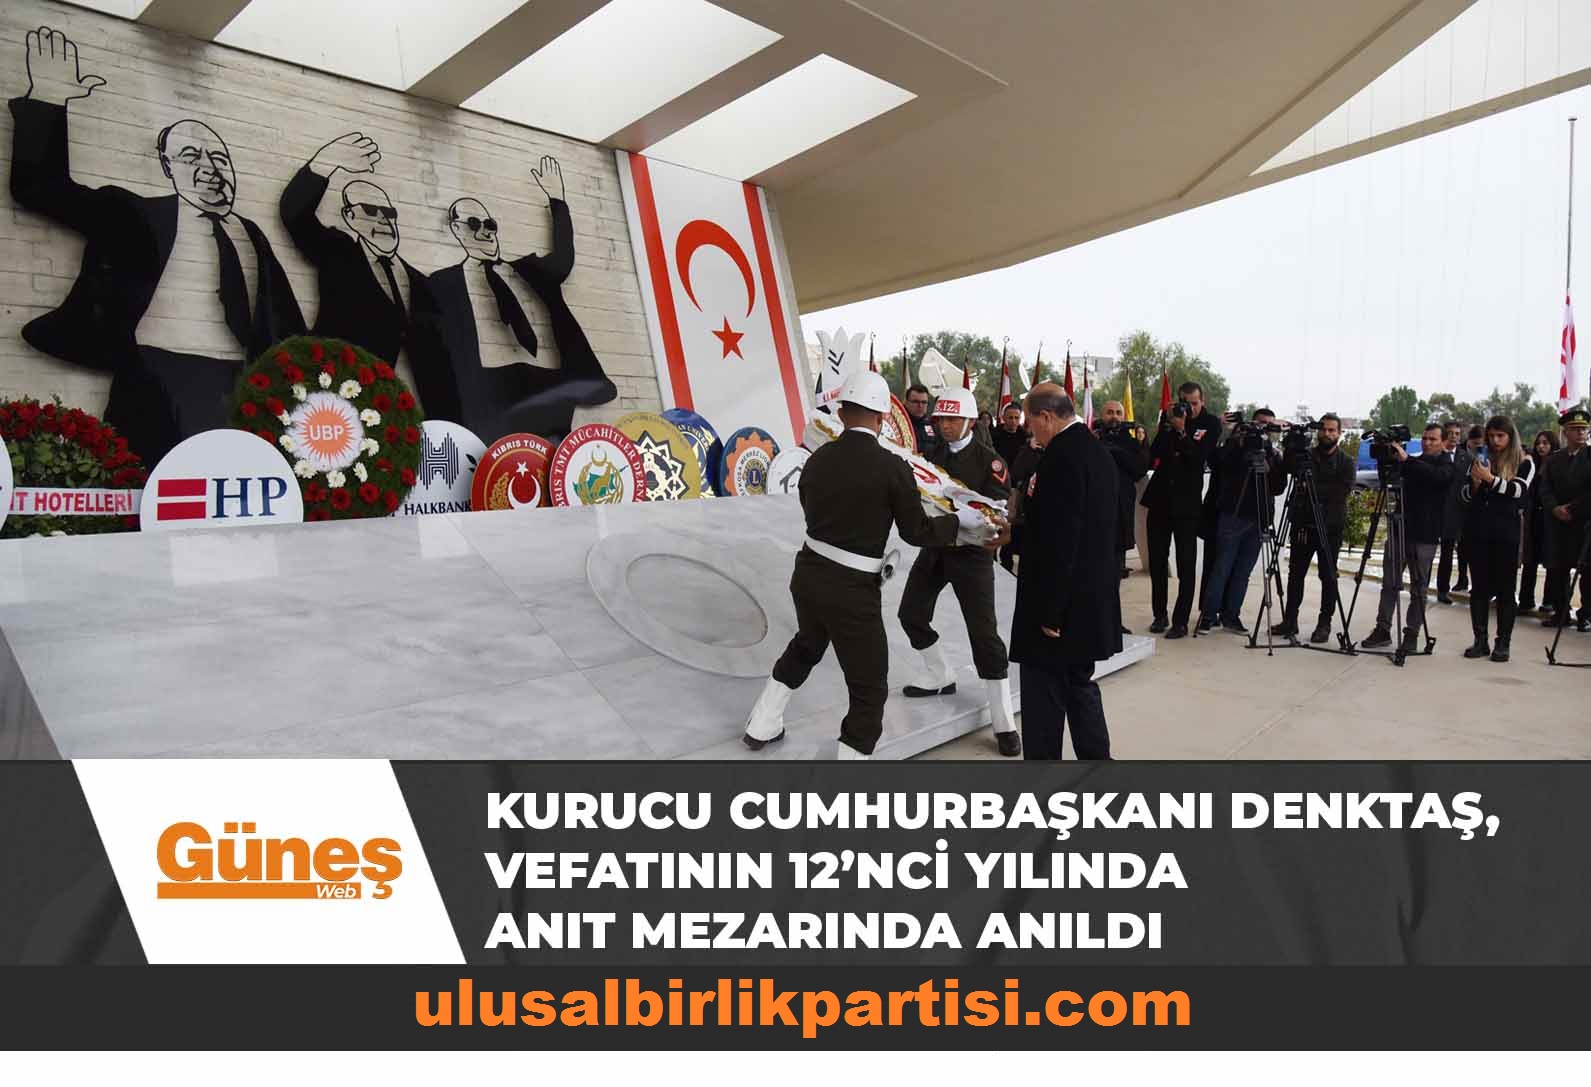 You are currently viewing Kurucu Cumhurbaşkanı Denktaş, vefatının 12’nci yılında anıt mezarında anıldı